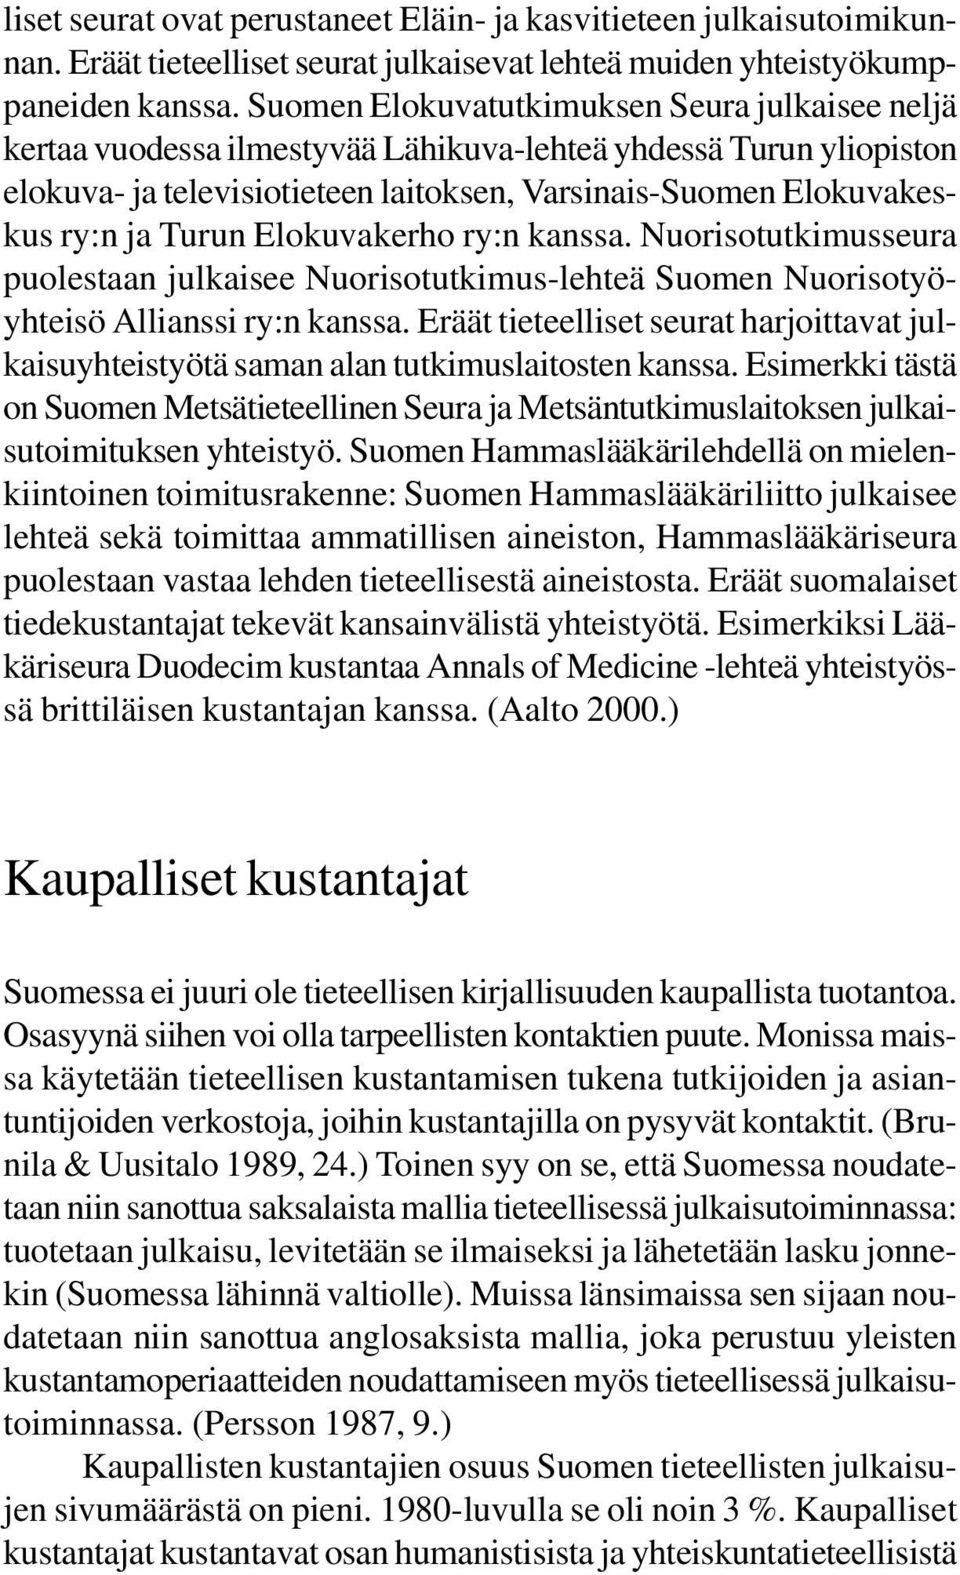 Turun Elokuvakerho ry:n kanssa. Nuorisotutkimusseura puolestaan julkaisee Nuorisotutkimus-lehteä Suomen Nuorisotyöyhteisö Allianssi ry:n kanssa.